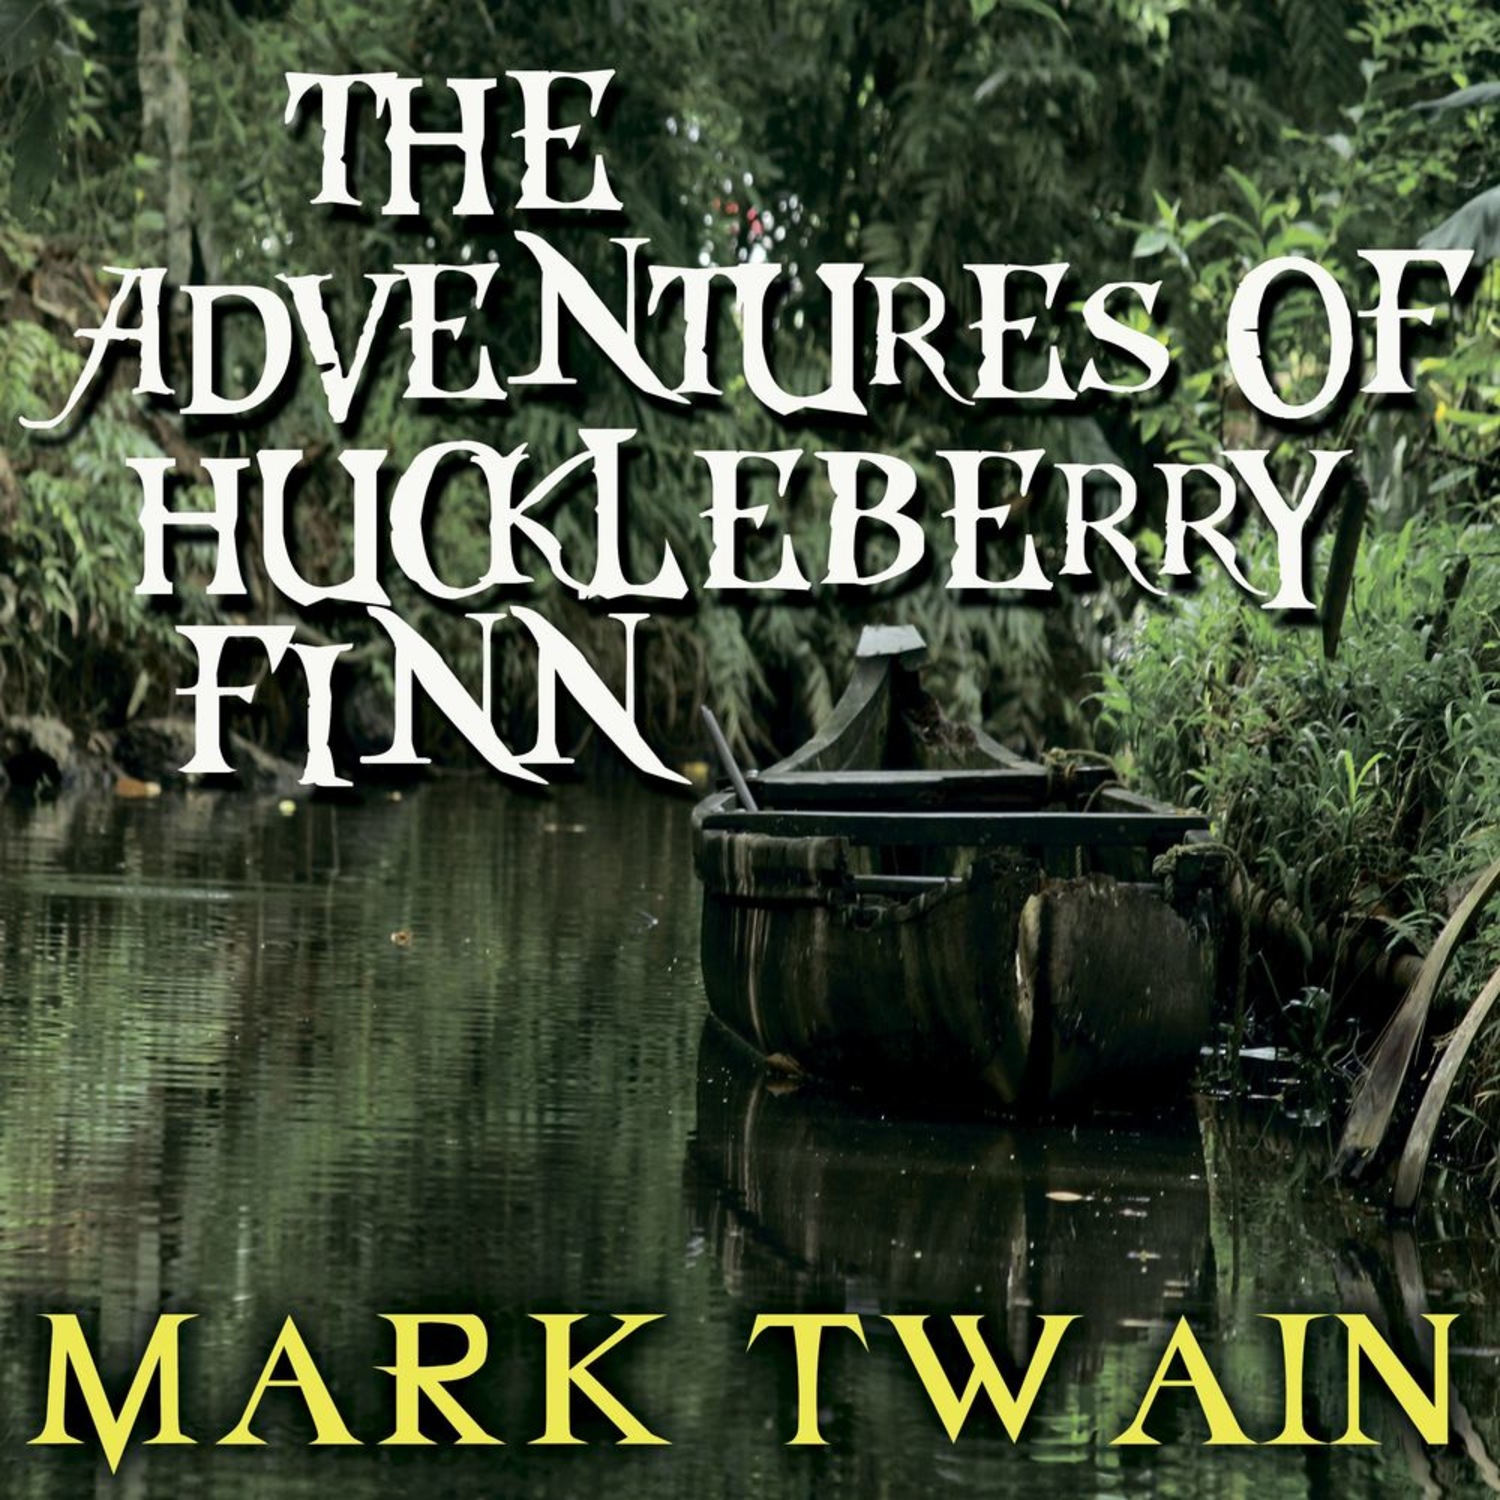 The adventures of huckleberry finn mark twain. Mark Twain the Adventures of Huckleberry Finn. Huckleberry Finn by Mark Twain.